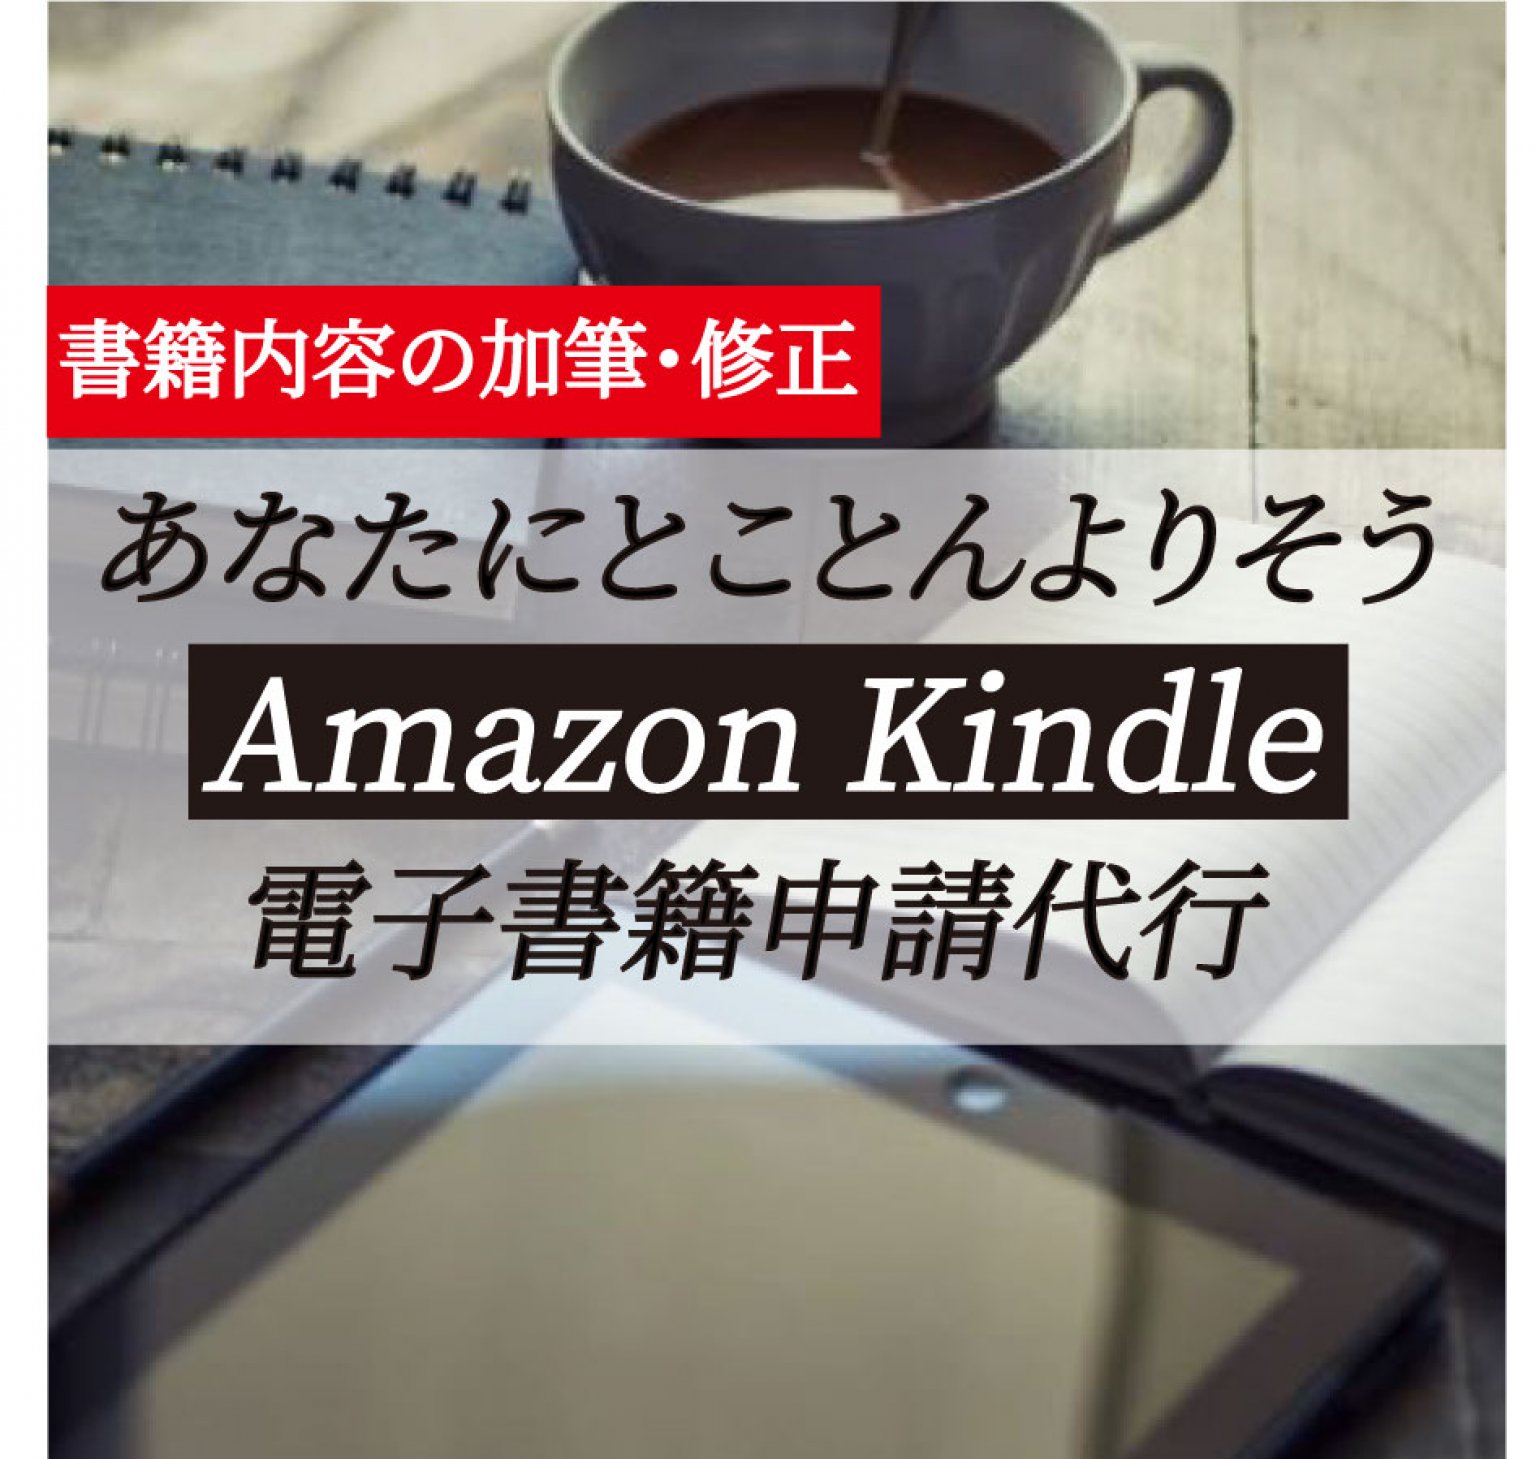 あなたにとことん寄り添う Amazon Kindle 書籍内容の加筆・修正